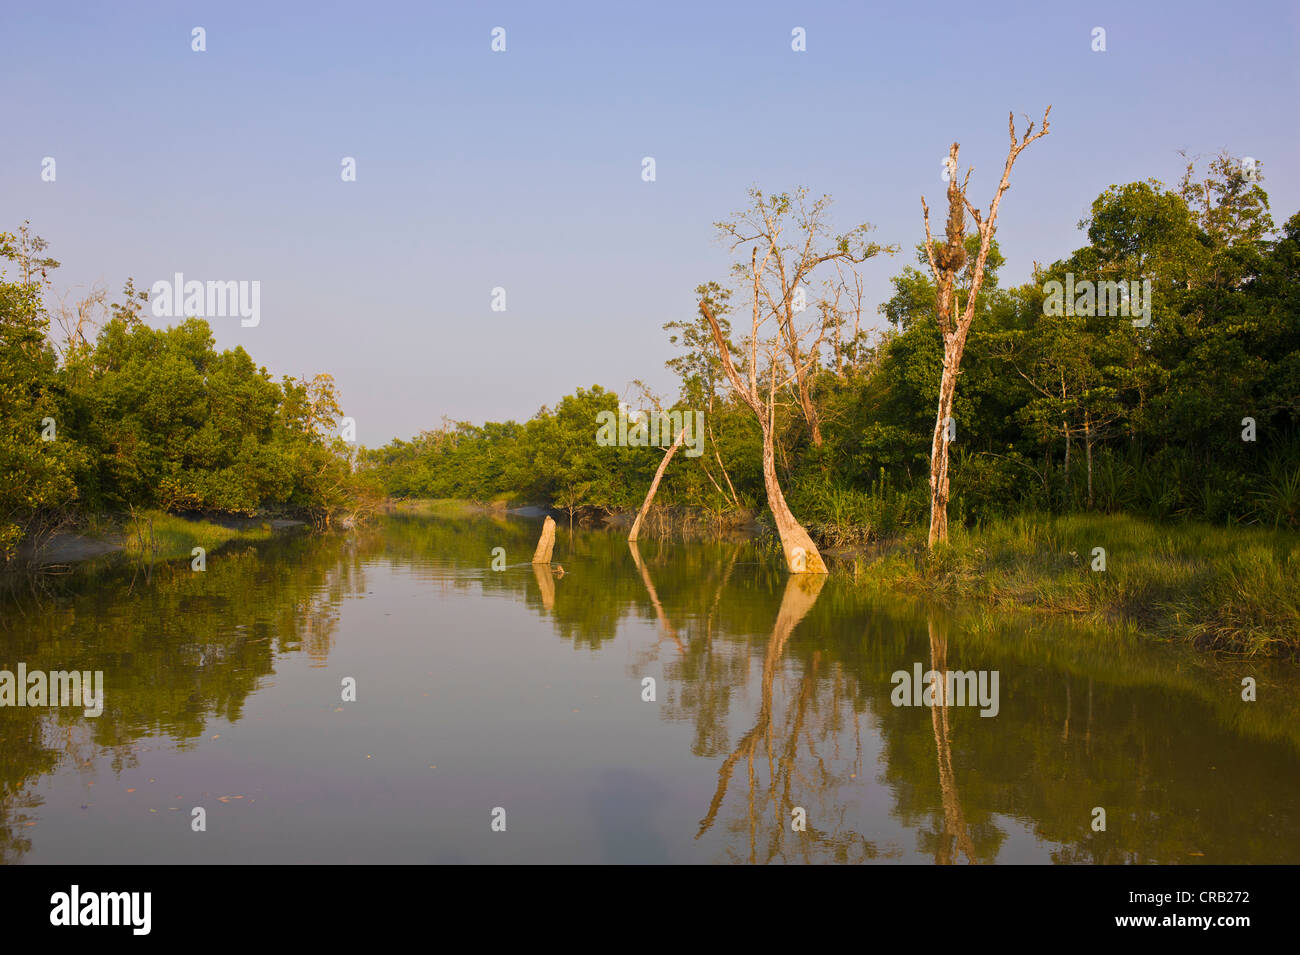 Les marais dans le patrimoine mondial de l'Asie, le Bangladesh, Sundarbans Banque D'Images